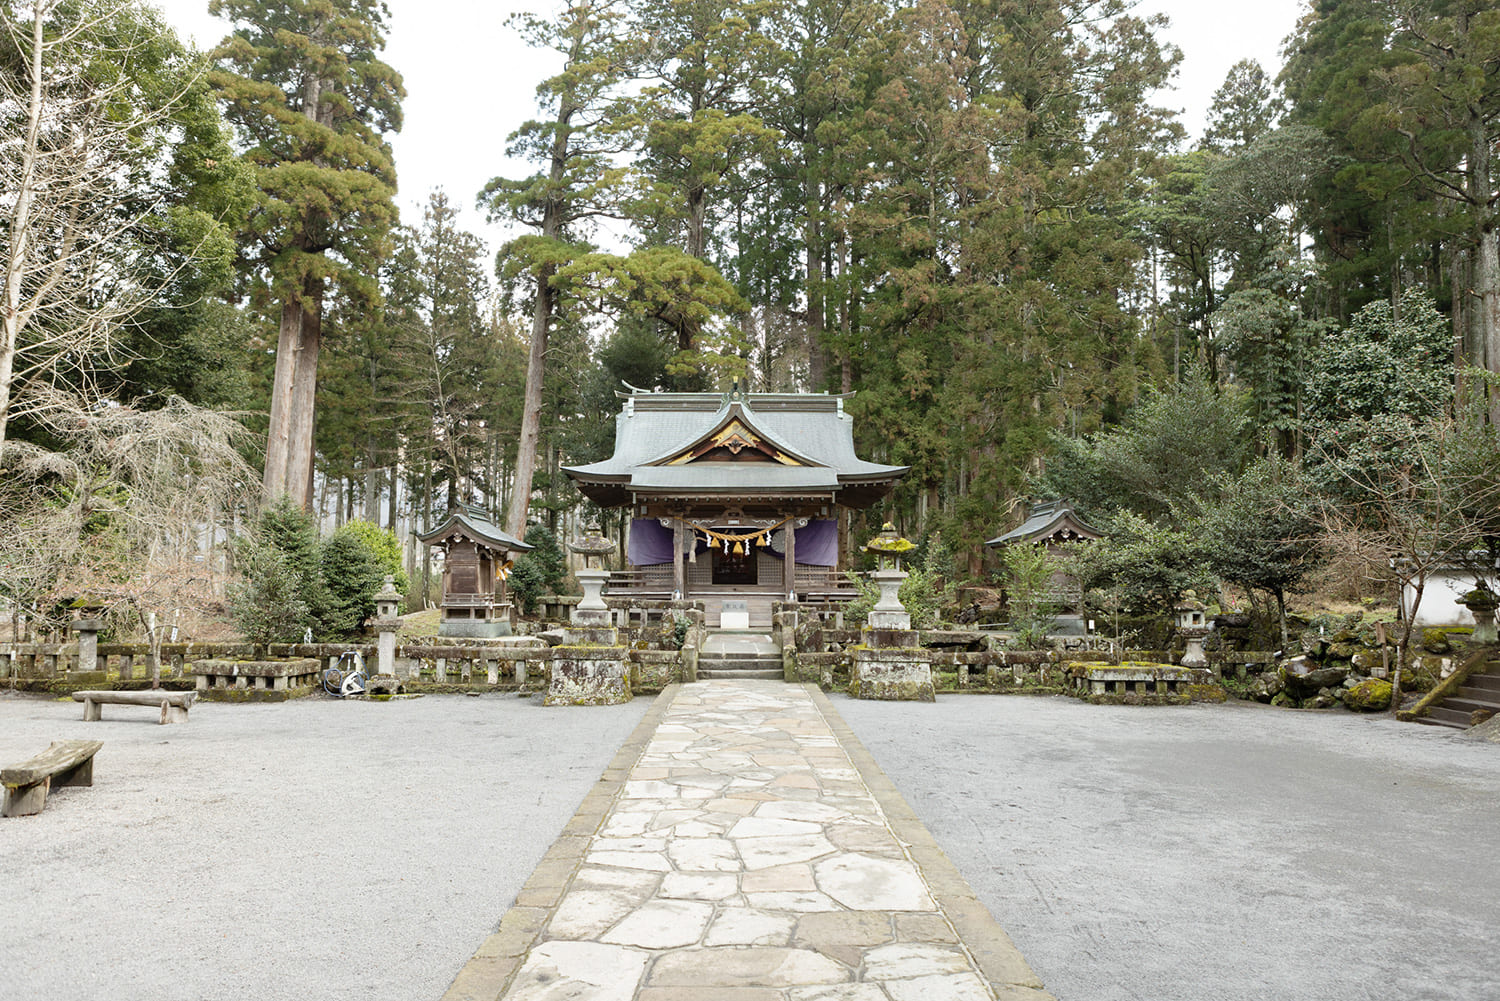 石畳の先に小さな神橋があり、渡った先に拝殿がある。周辺は神池が広がる